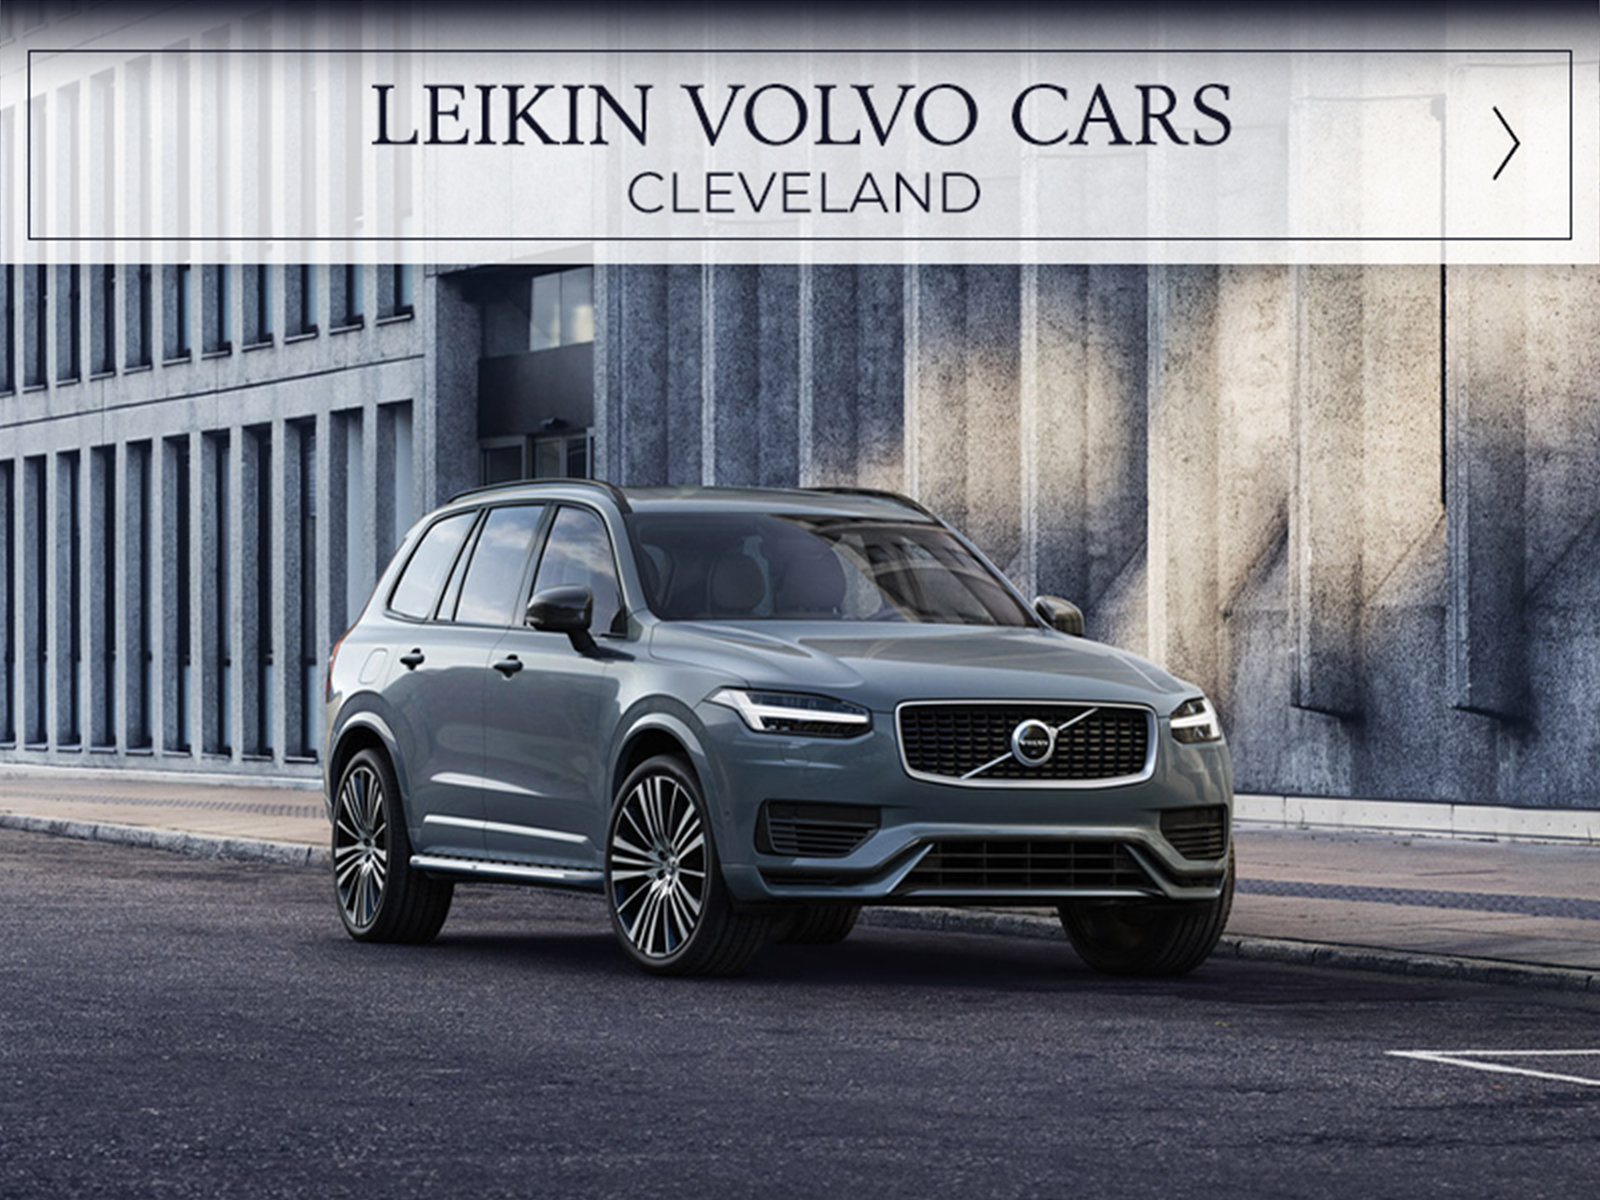 Visit Leikin Volvo